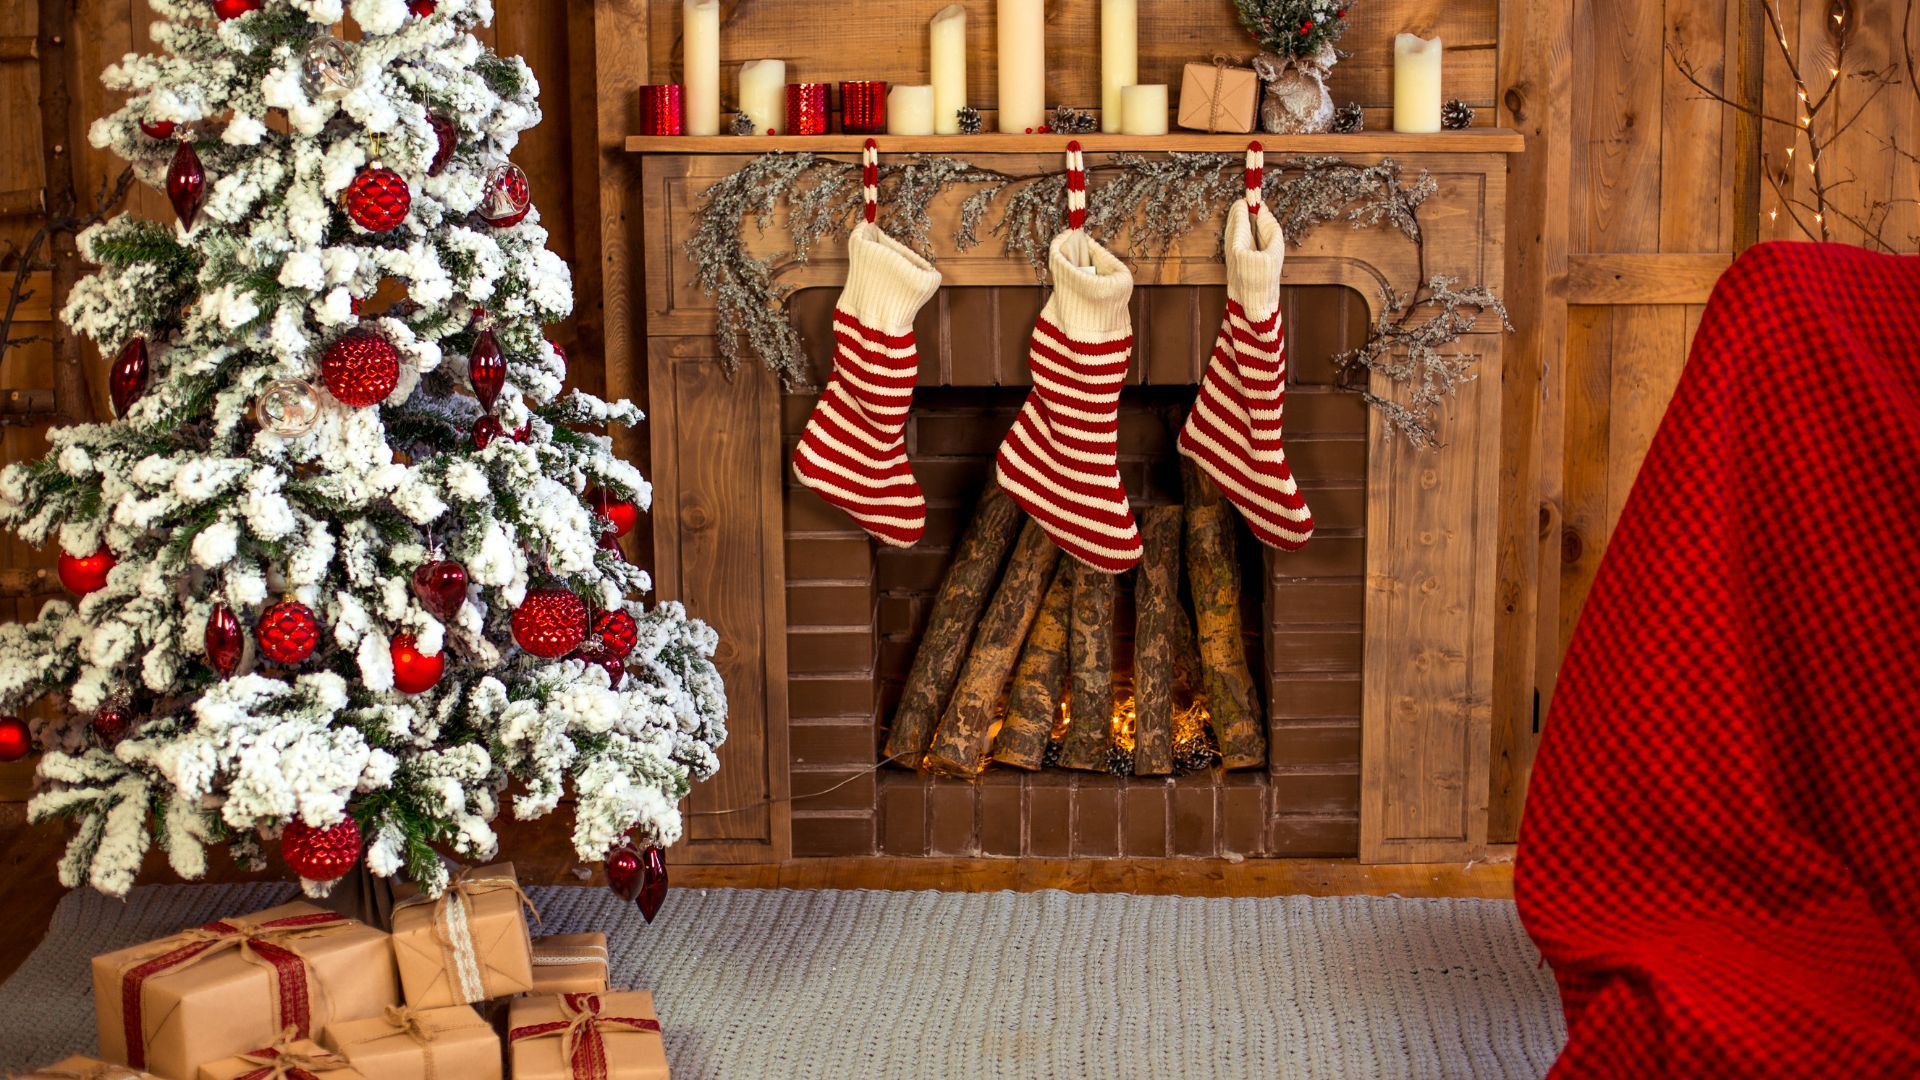 Imagem com uma lareira, decorada com botas natalinas feitas de lã nas cores vermelho e branco. Do lado esquedo, uma árvore de Natal decorada e sobre ela, presentes de Natal.